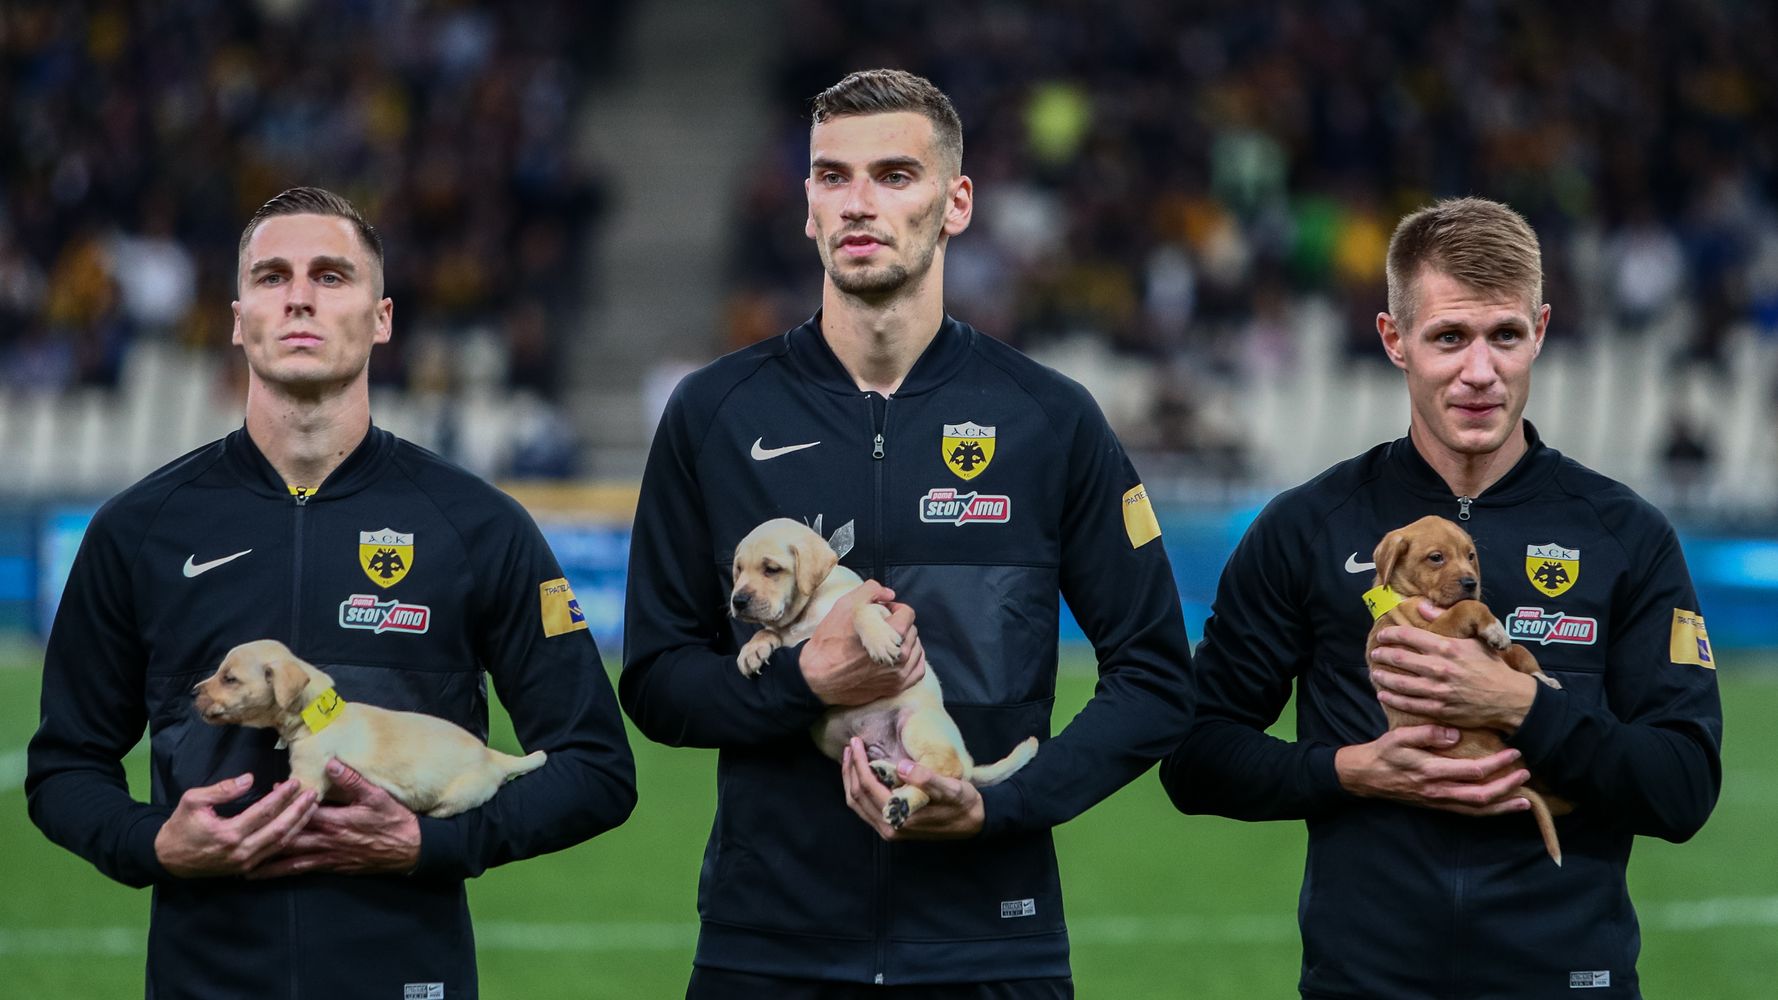 Ποδοσφαιριστές της ΑΕΚ με αδέσποτα κουτάβια στην αγκαλιά τους.